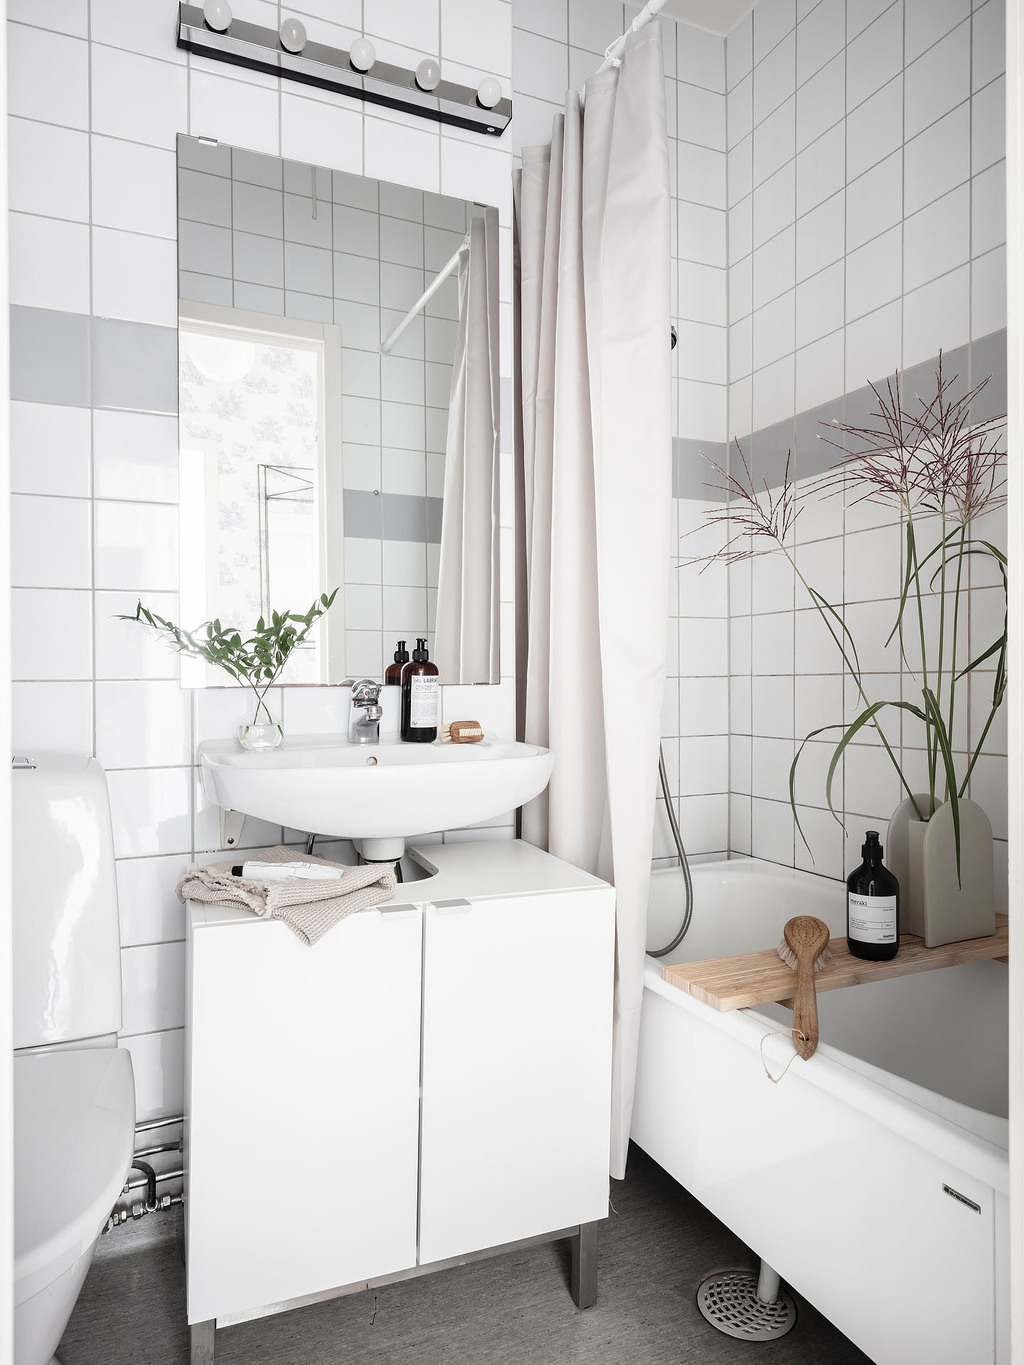 Tủ vanity kết hợp bồn rửa bố trí giữa toilet và bồn tắm nằm. Nội thất phòng tắm khá nhỏ gọn nhưng đầy đủ tiện nghi, đặc biệt là gương soi giúp phản chiếu ánh sáng.